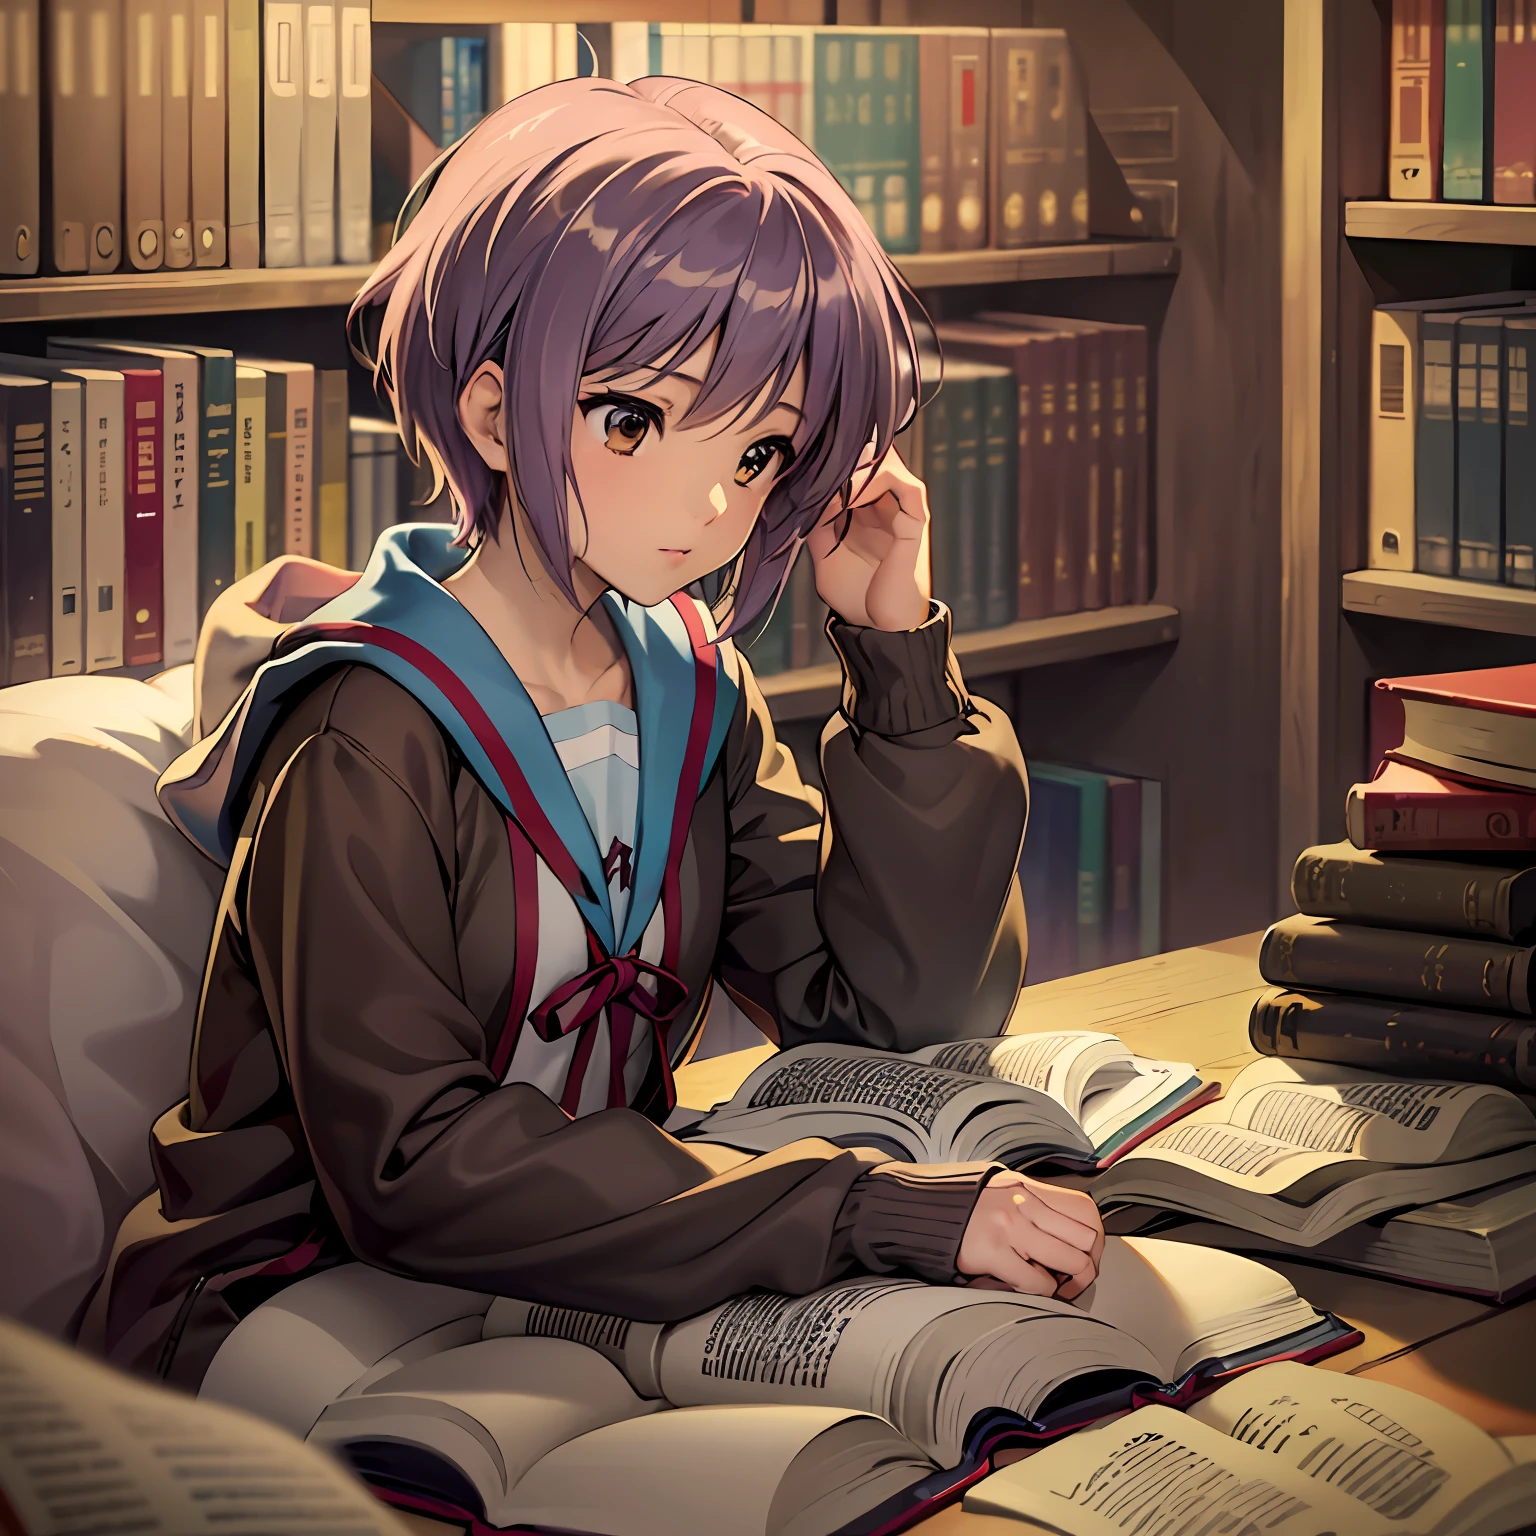 Yuki Nagato, le personnage énigmatique de "Suzumiya Haruhi no Yuutsu," semble mener une vie ordinaire, vie sans prétention à la surface. Ses activités quotidiennes sont voilées de mystère, souvent inaperçue de ses pairs. Encore, sous son extérieur réservé, se trouve un rat de bibliothèque vorace avec une passion cachée pour la littérature.

Tous les matins, Yuki part pour l&#39;école avec un air calme. Ses pairs la voient comme une étudiante réservée et banale, sans jamais soupçonner la profondeur des connaissances qu&#39;elle possède. Alors qu&#39;elle est assise à son bureau, son nez enfoui dans un livre, ses camarades de classe supposent qu&#39;elle ne fait que terminer ses devoirs. Ils ne savent pas que les livres de Yuki recèlent des secrets sur des mondes bien au-delà de l&#39;ordinaire..

Pendant les pauses déjeuner, Yuki trouve du réconfort dans la bibliothèque de l&#39;école, entouré du parfum réconfortant des pages vieillies. Elle se plonge dans des livres de tous genres, de la littérature classique aux revues scientifiques obscures. La lecture est sa porte d&#39;entrée vers des possibilités infinies, où l&#39;imagination ne connaît pas de limites.

Alors que les cours de l&#39;après-midi bourdonnent, L&#39;esprit de Yuki dérive souvent vers les mondes qu&#39;elle a explorés dans les pages de ses livres.. Ses yeux peuvent être concentrés sur le tableau, mais ses pensées sont toujours à un autre univers. Dans le domaine de son esprit, elle évoque des aventures, percer des mystères, et plonger dans les profondeurs des émotions humaines.

Après l&#39;école, Yuki s&#39;éclipse dans un coin tranquille de la bibliothèque., loin des foules animées. Ici, elle trouve réconfort et réconfort parmi les rangées de livres qui bordent les étagères. Dans le monde de la littérature, elle trouve de la compagnie et de la compréhension, un refuge contre les complexités de la réalité.

Une fois le soir descendu, Yuki rentre chez elle, où sa chambre est ornée d&#39;étagères débordantes de livres. Cet espace est son sanctuaire, où elle peut se plonger dans des histoires jusque tard dans la nuit. La douce lueur d&#39;une lampe crée une aura chaleureuse, et elle se perd dans les aventures de personnages qu&#39;elle connaît en tant qu&#39;amis.